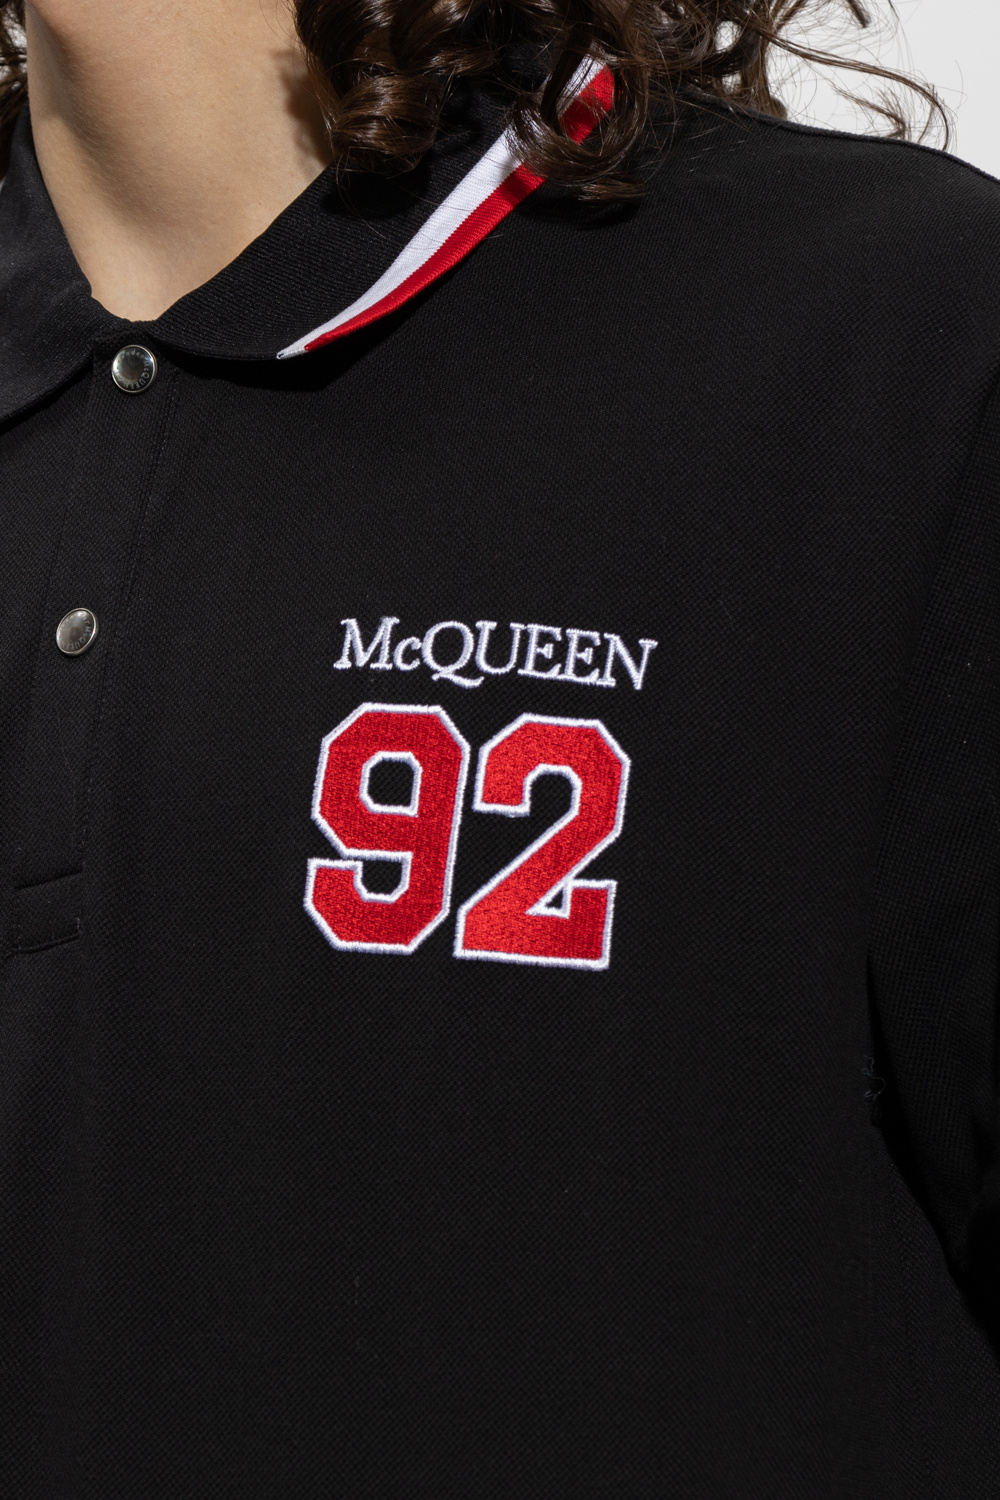 Alexander McQueen Silver clothing polo-shirts